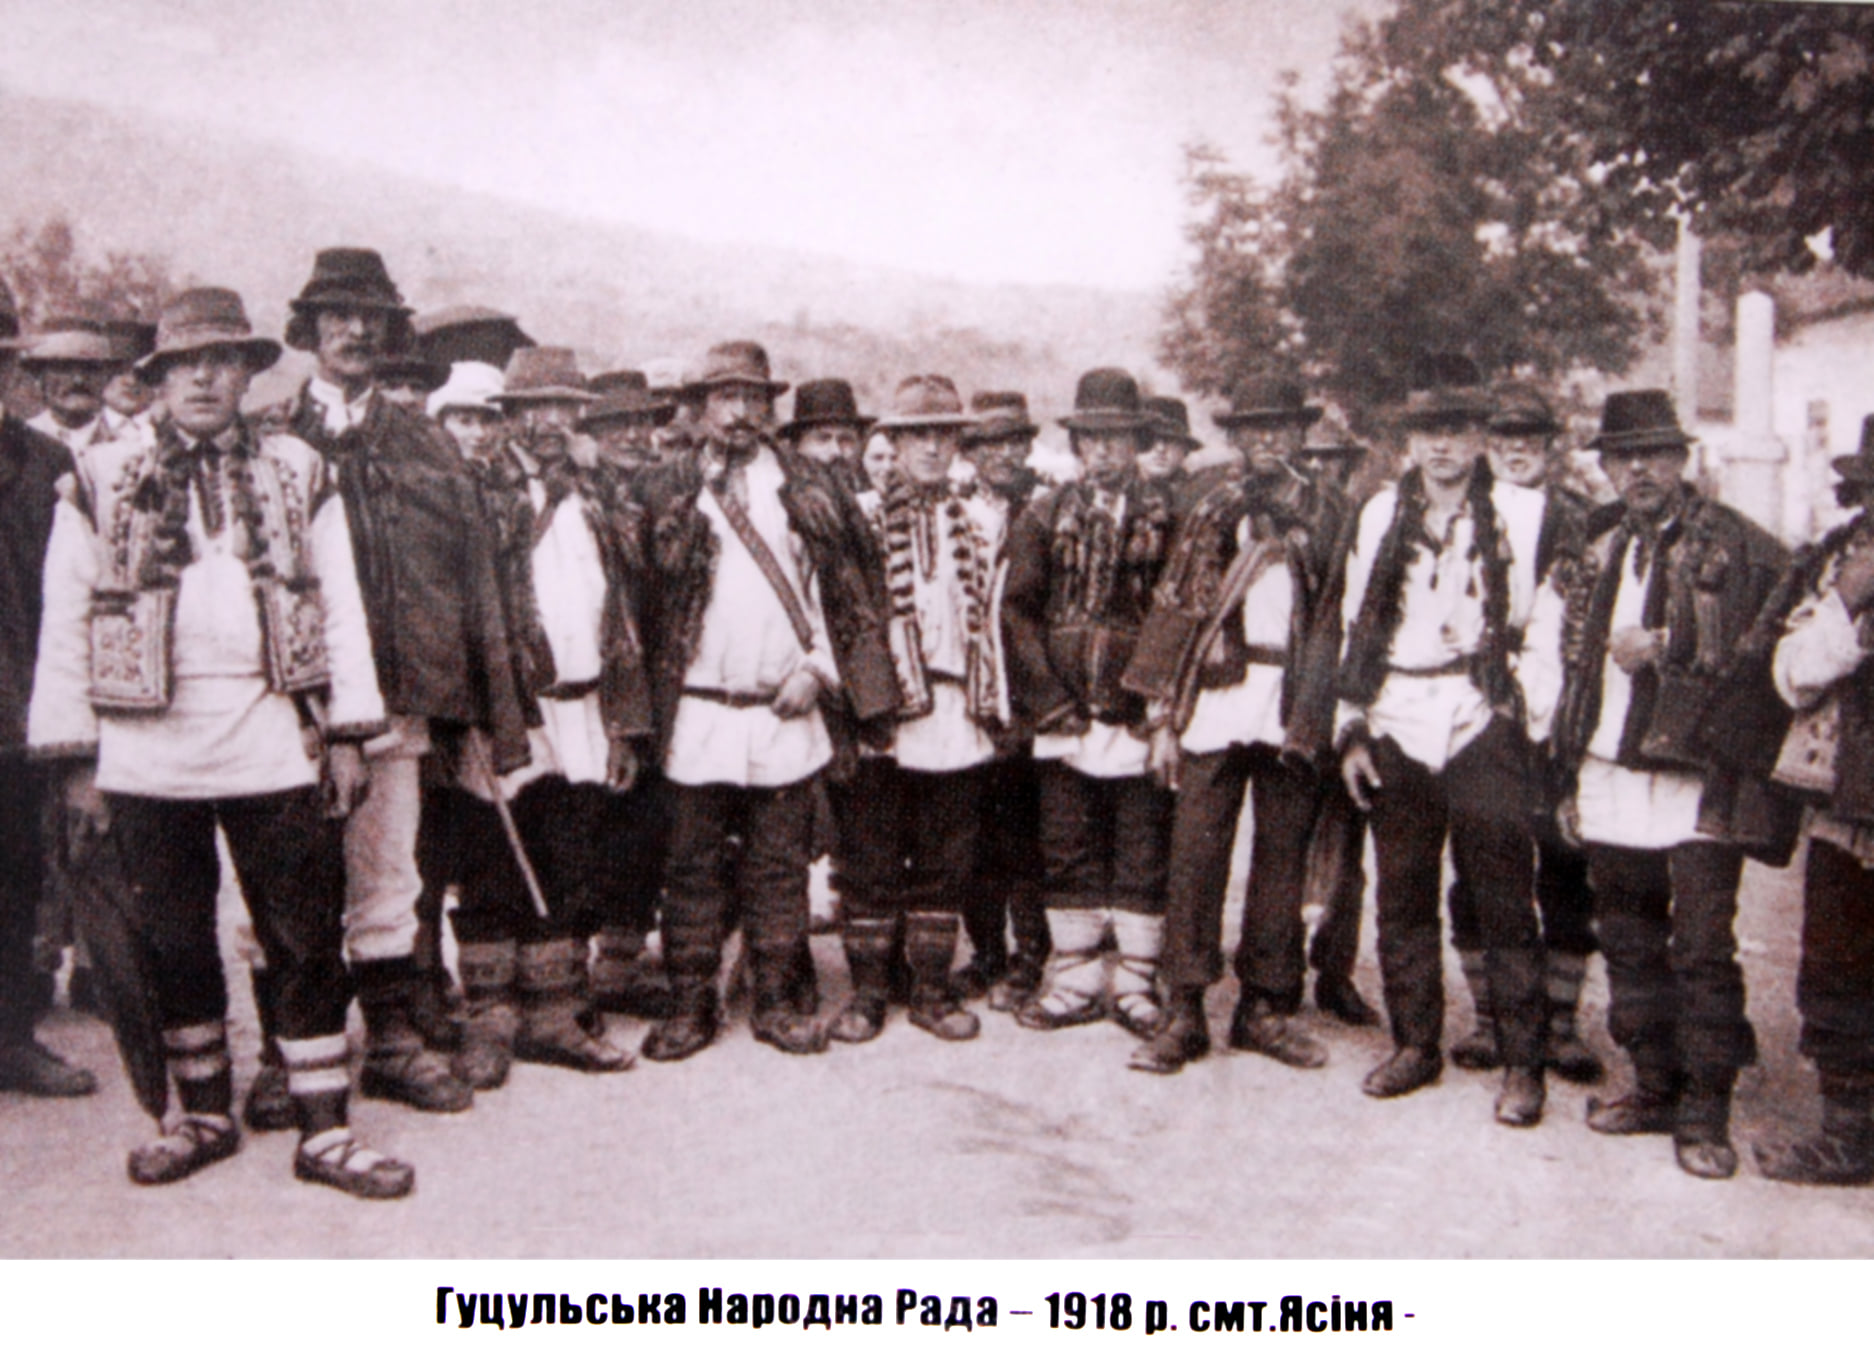 Гуцульська Народна Рада, Ясіня, 1918